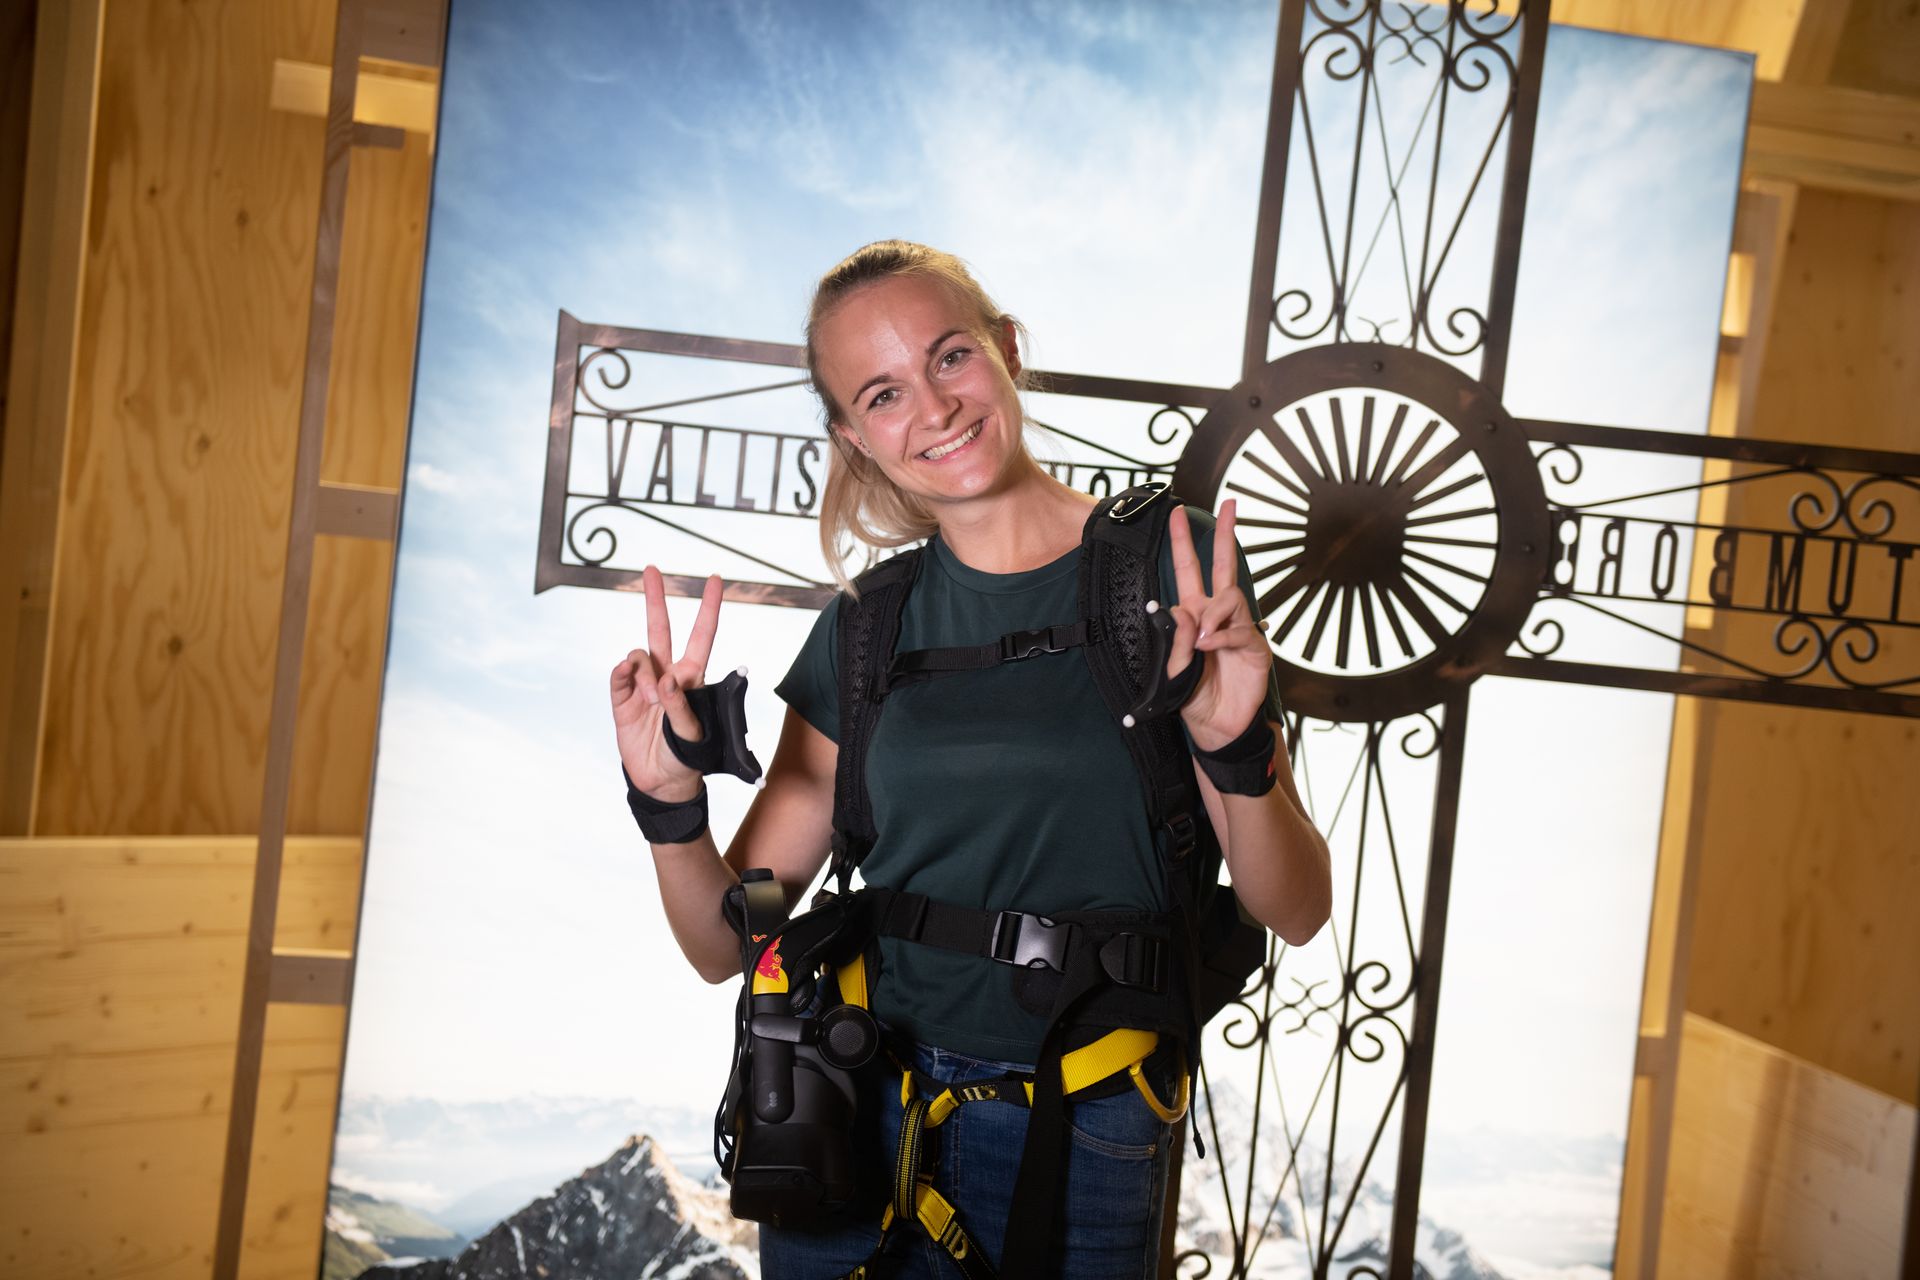 Presso il Museo Svizzero dei Trasporti di Lucerna, è possibile affrontare virtualmente la scalata del monte Cervino “armati” di occhiali di realtà virtuale e di imbracatura da rocciatori: si tratta di un’iniziativa di Red Bull Svizzera e di vari partner, denominata “The Edge Matterhorn VR”, tramite la quale è stata replicata l’ascesa reale degli alpinisti Jérémie Heitz e Sam Anthamatten, guide alpine di Zermatt, prevedendo anche gli effetti 4D del vento, delle vibrazioni, texture e numerosi oggetti o elementi di scena